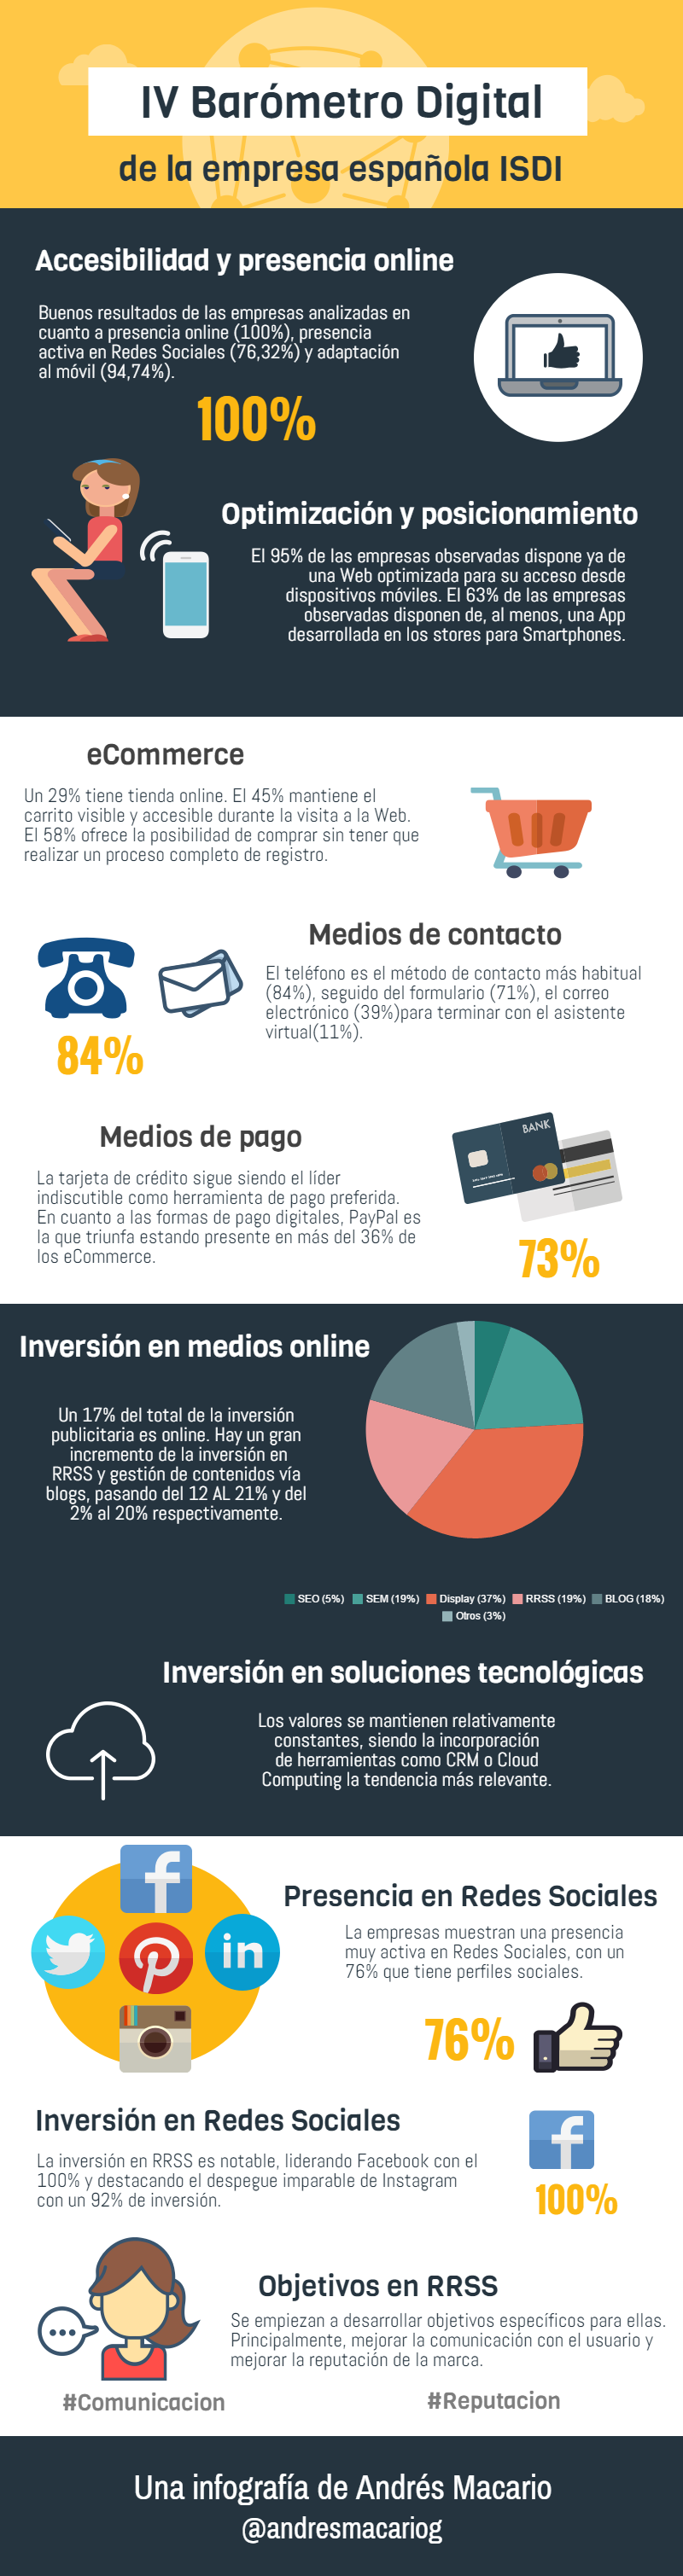 IV Barómetro Digital de la empresa española